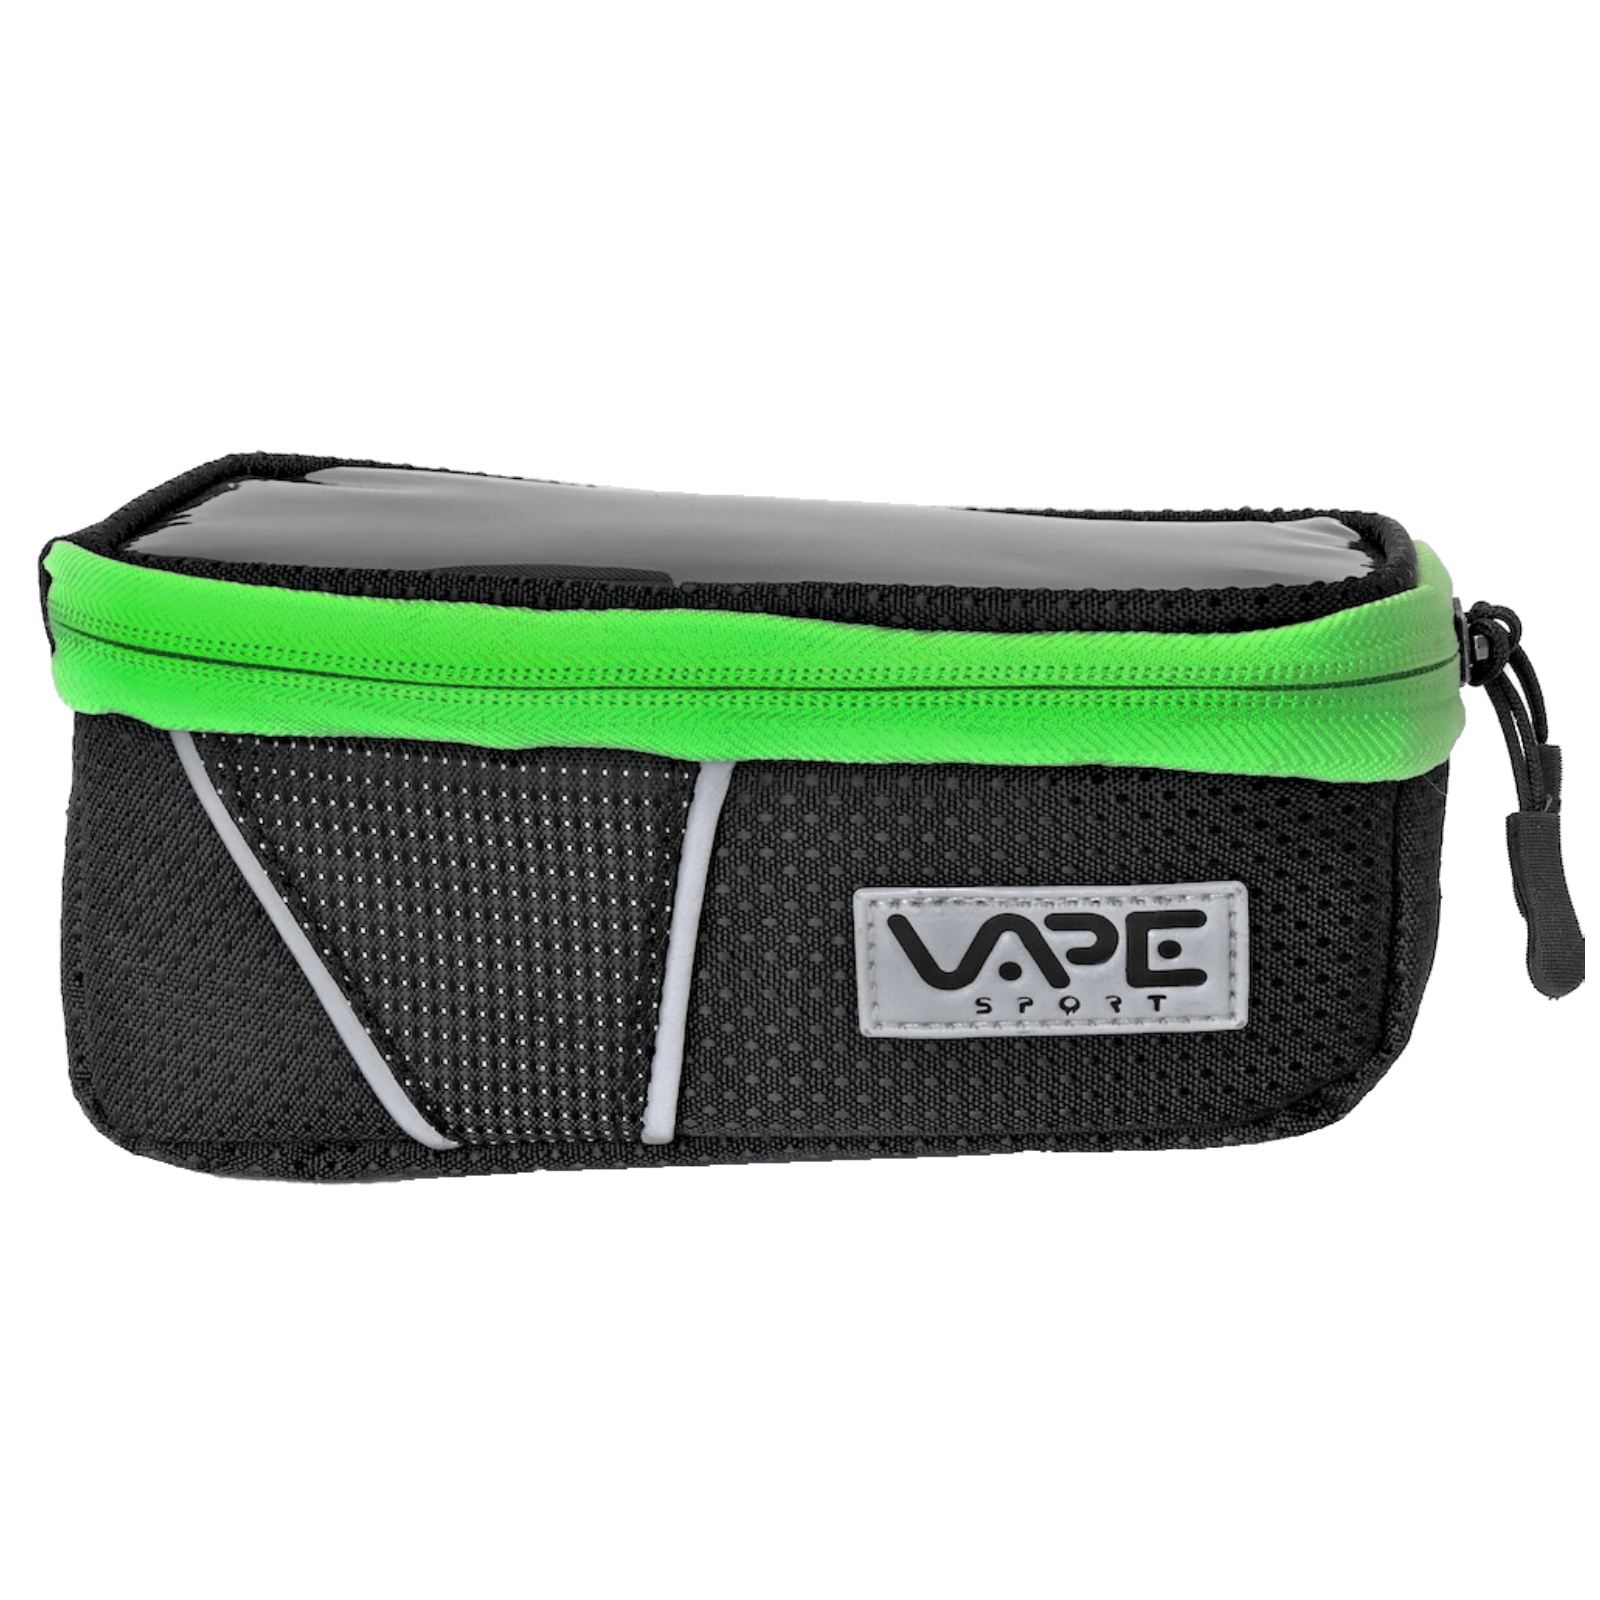 Cyklo taška VAPE na mobil 6,7" - zelená